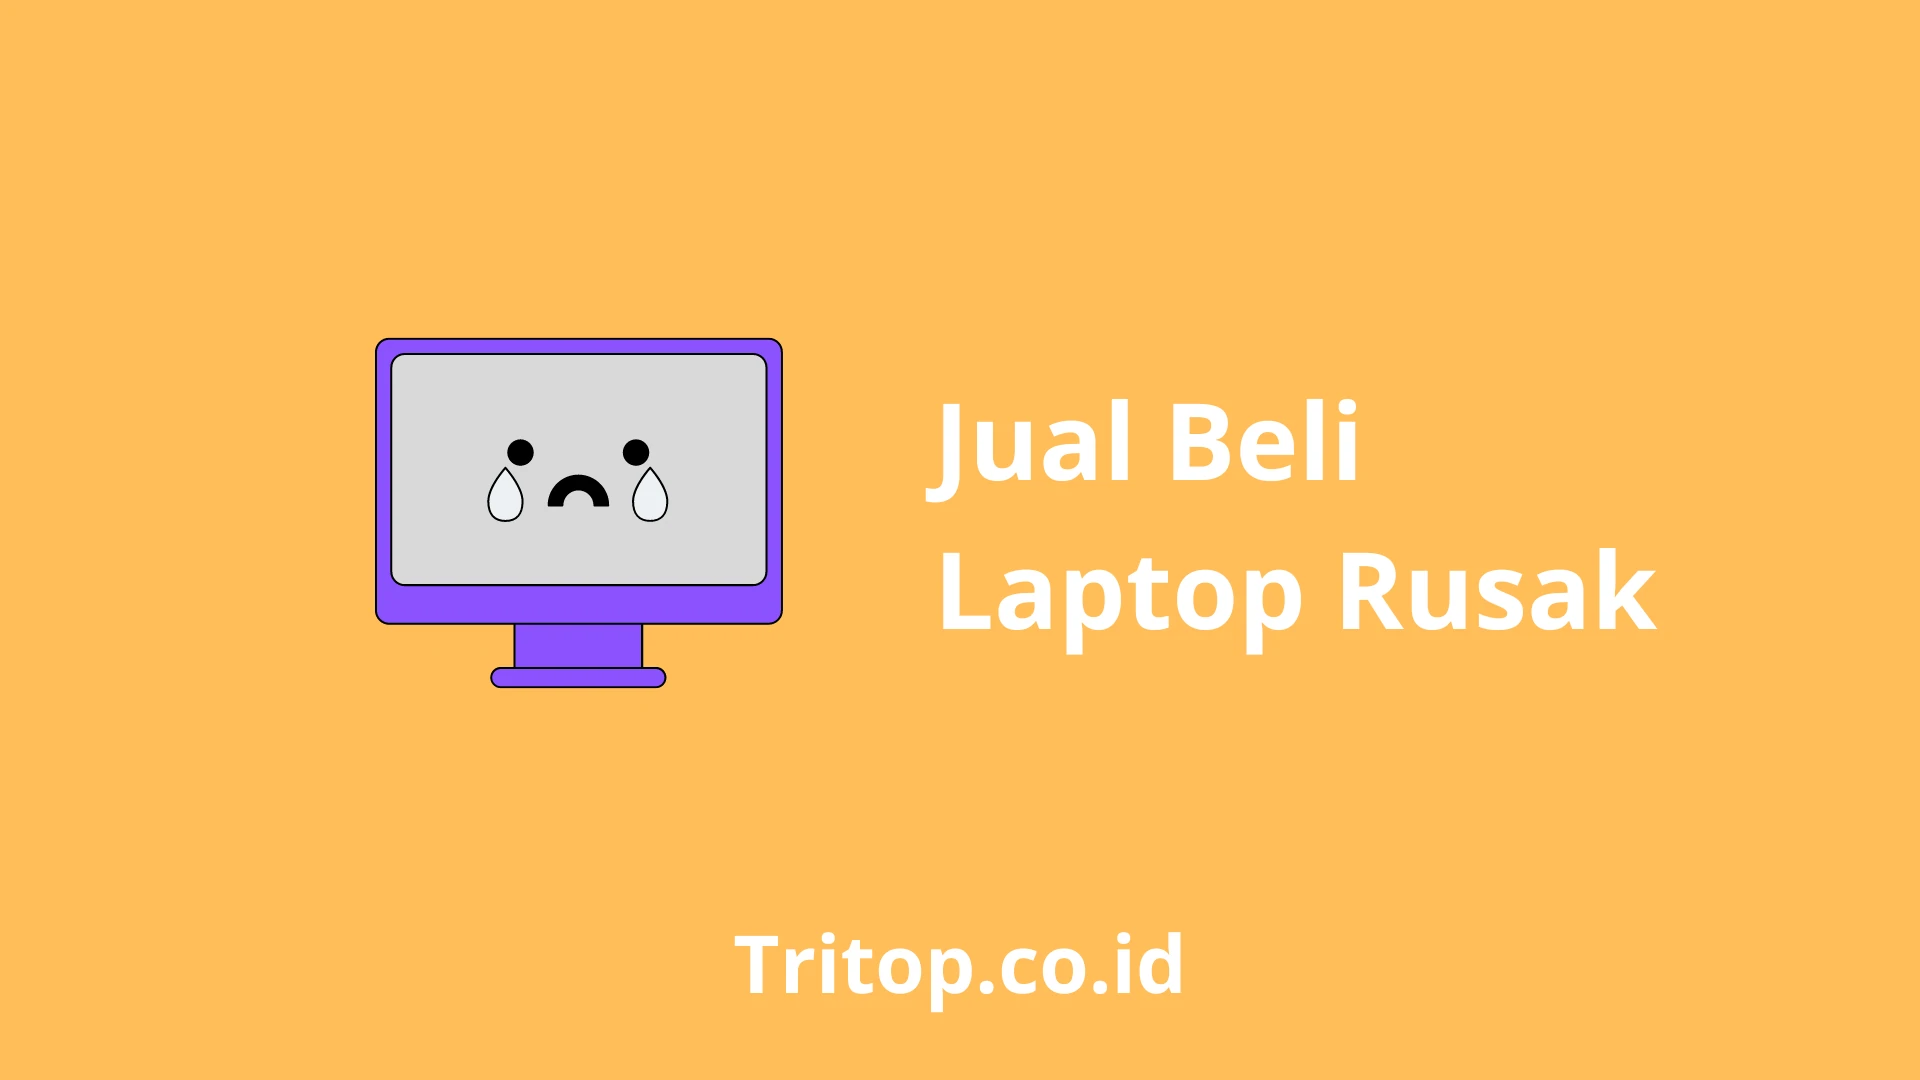 Jual Beli Laptop Rusak tritop.co.id